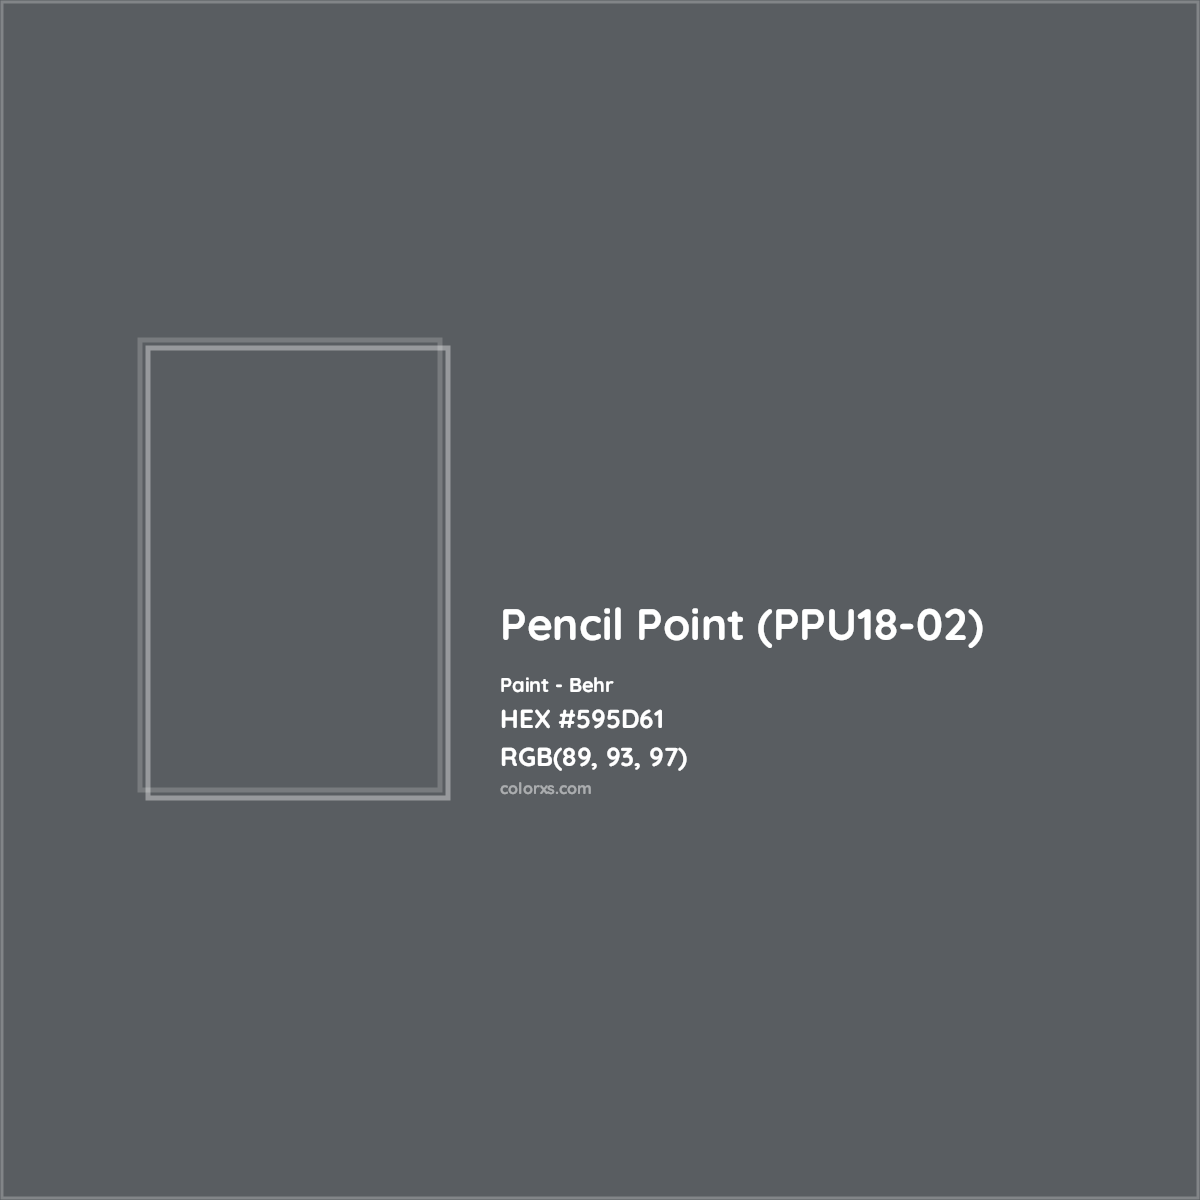 HEX #595D61 Pencil Point (PPU18-02) Paint Behr - Color Code